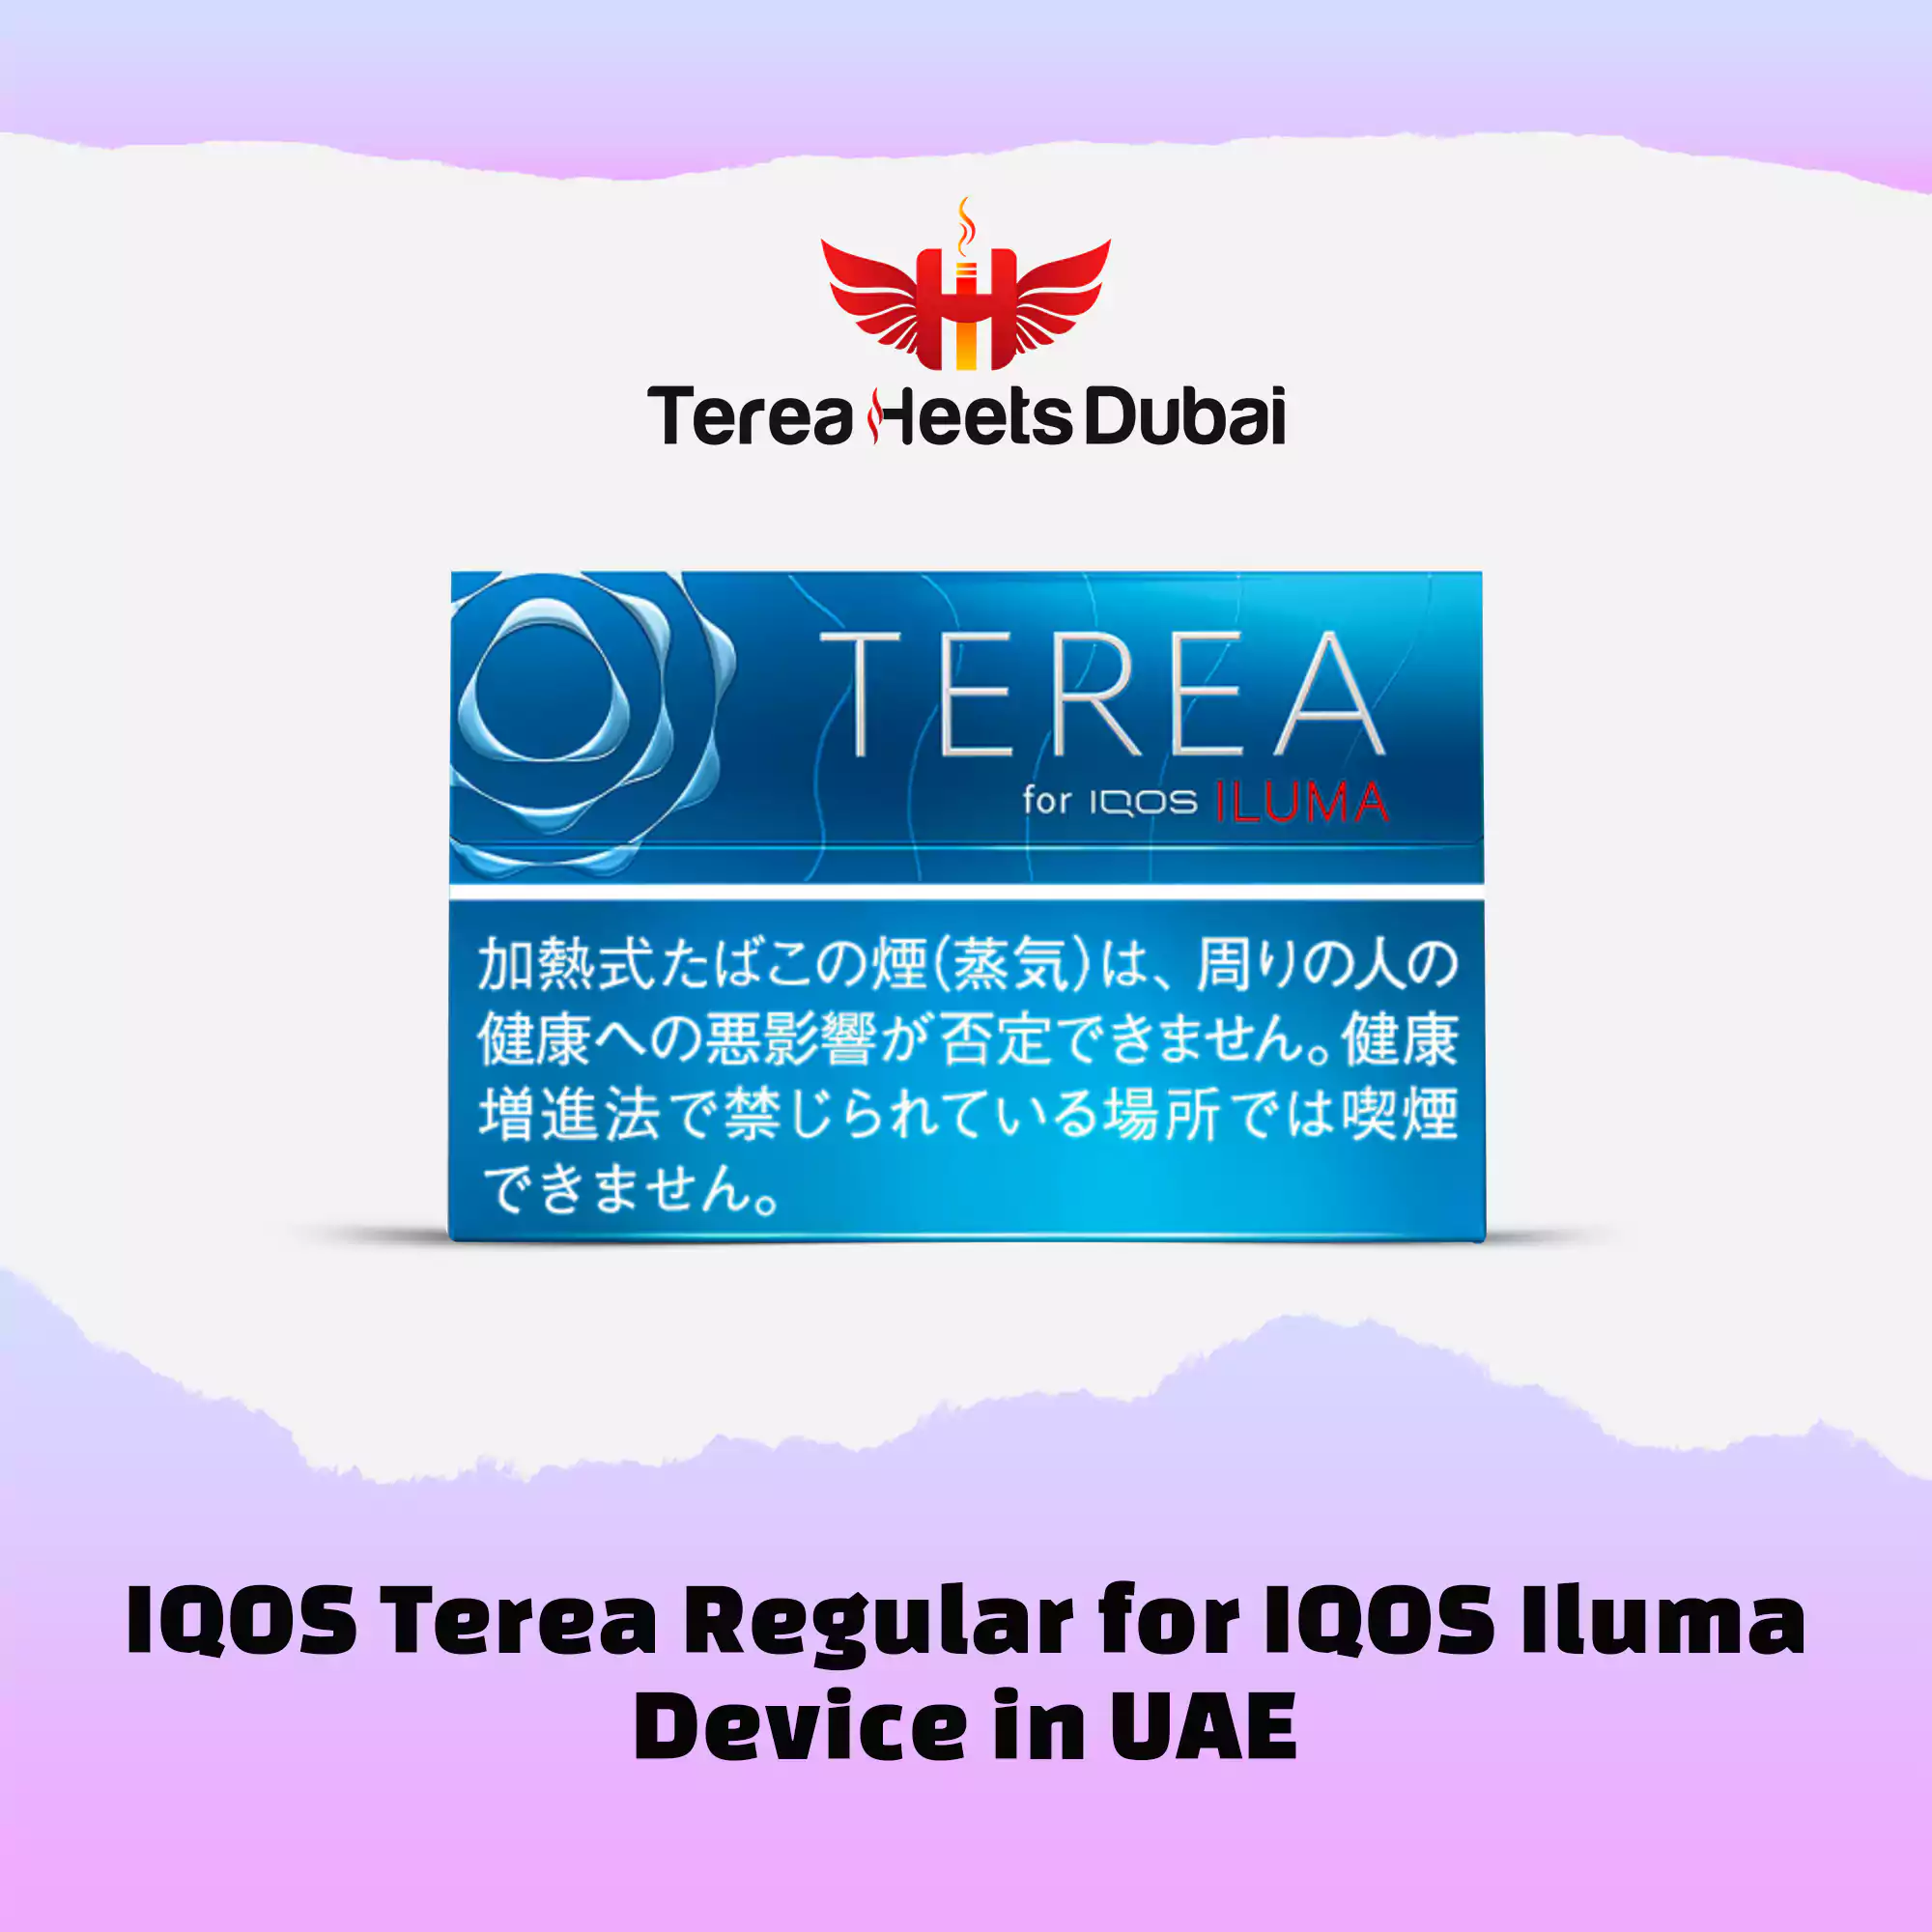 IQOS Terea Regular for IQOS Iluma Device in Dubai